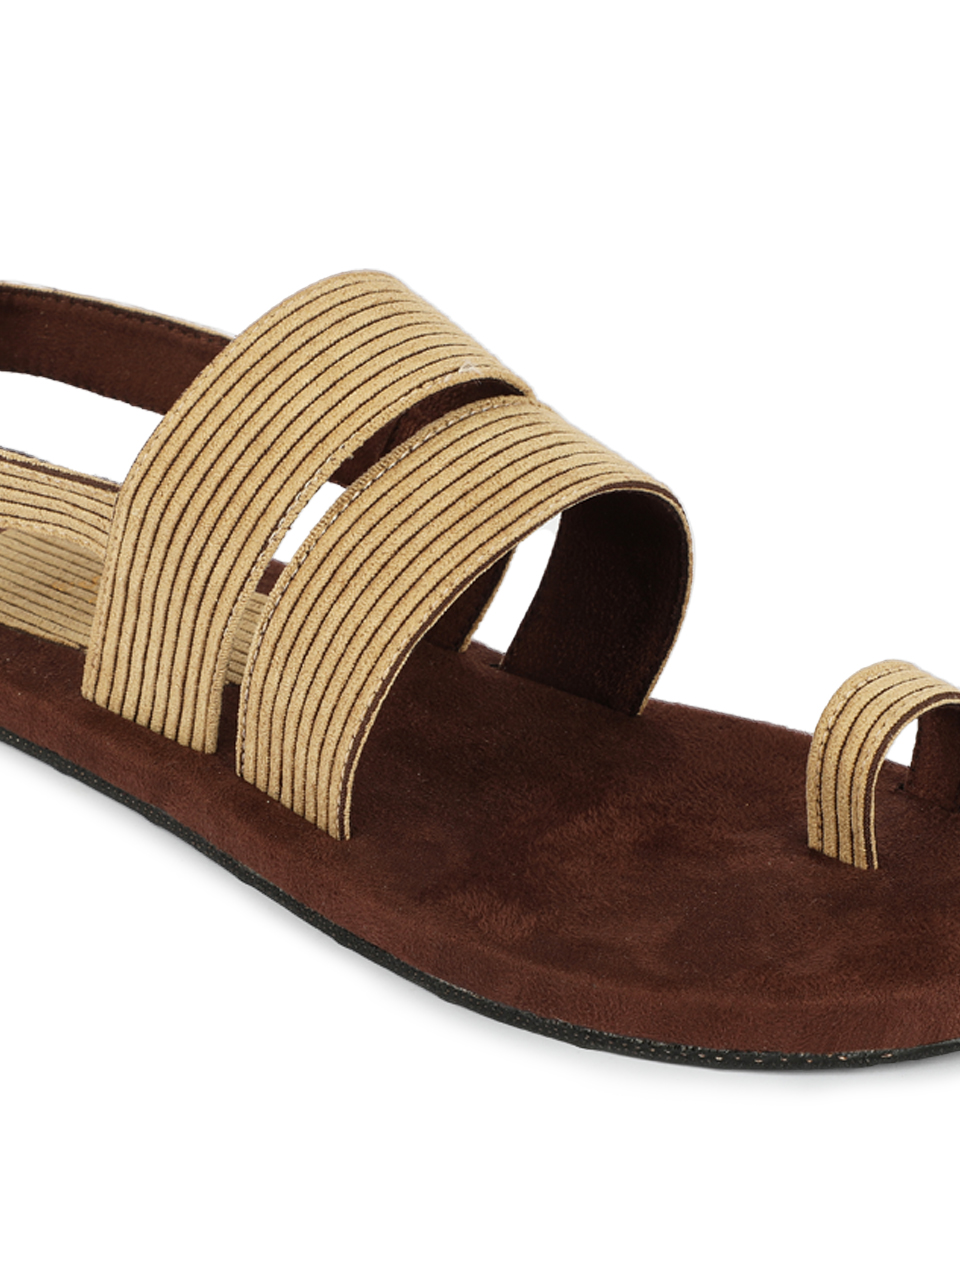 Product: Paaduks Sef Sand Beige Men Sandals